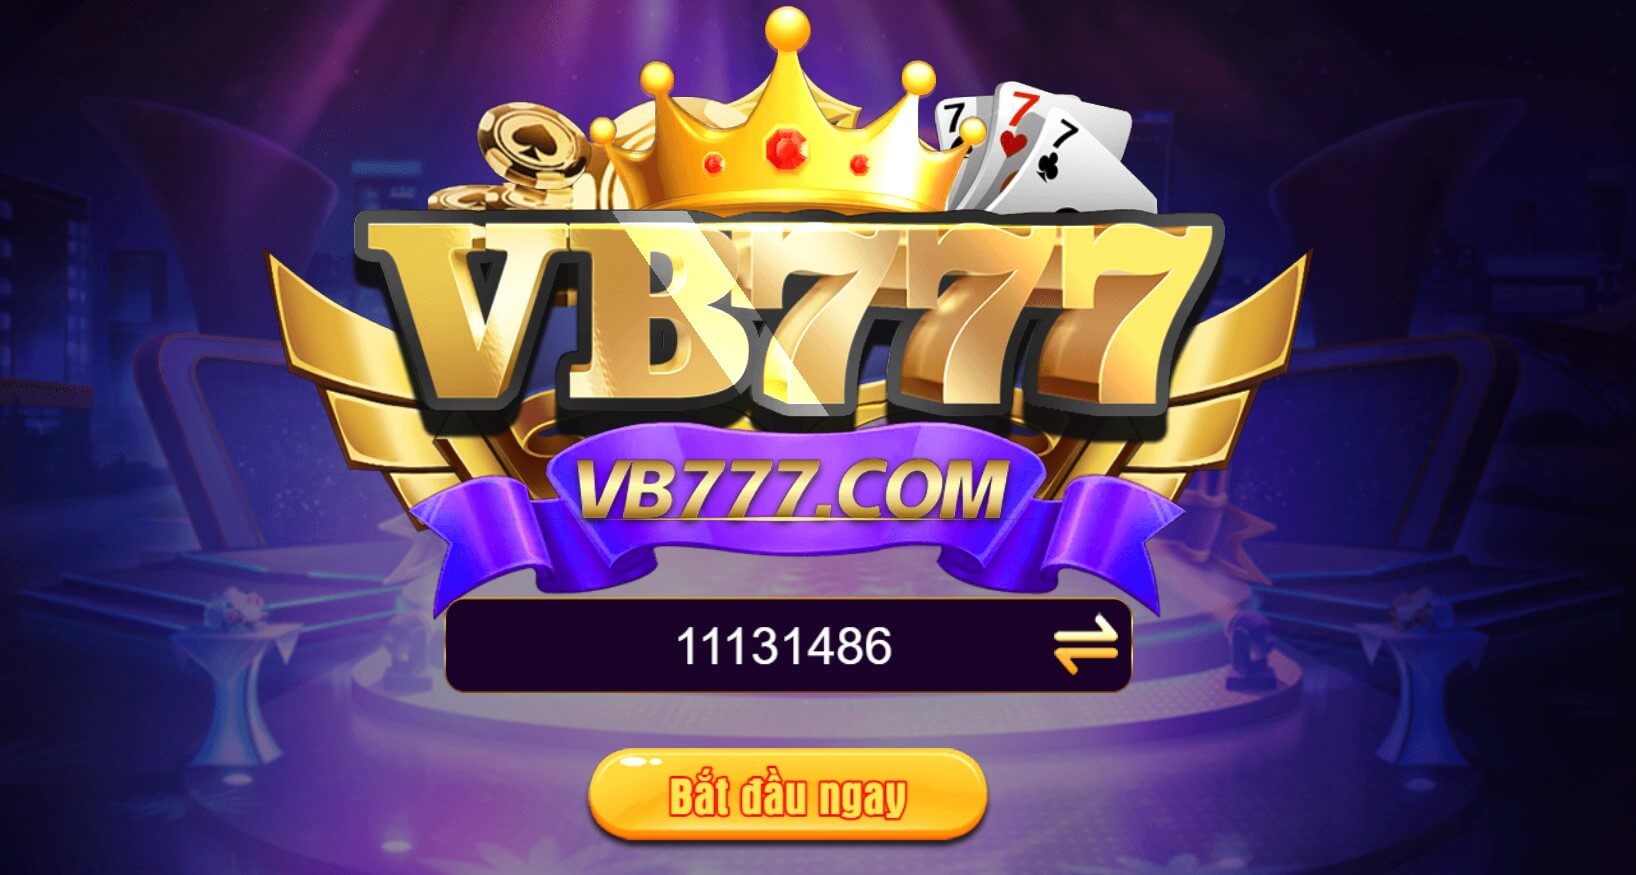 Link tải game VB777 mới nhất, đăng ký nhận code 88k miễn phí